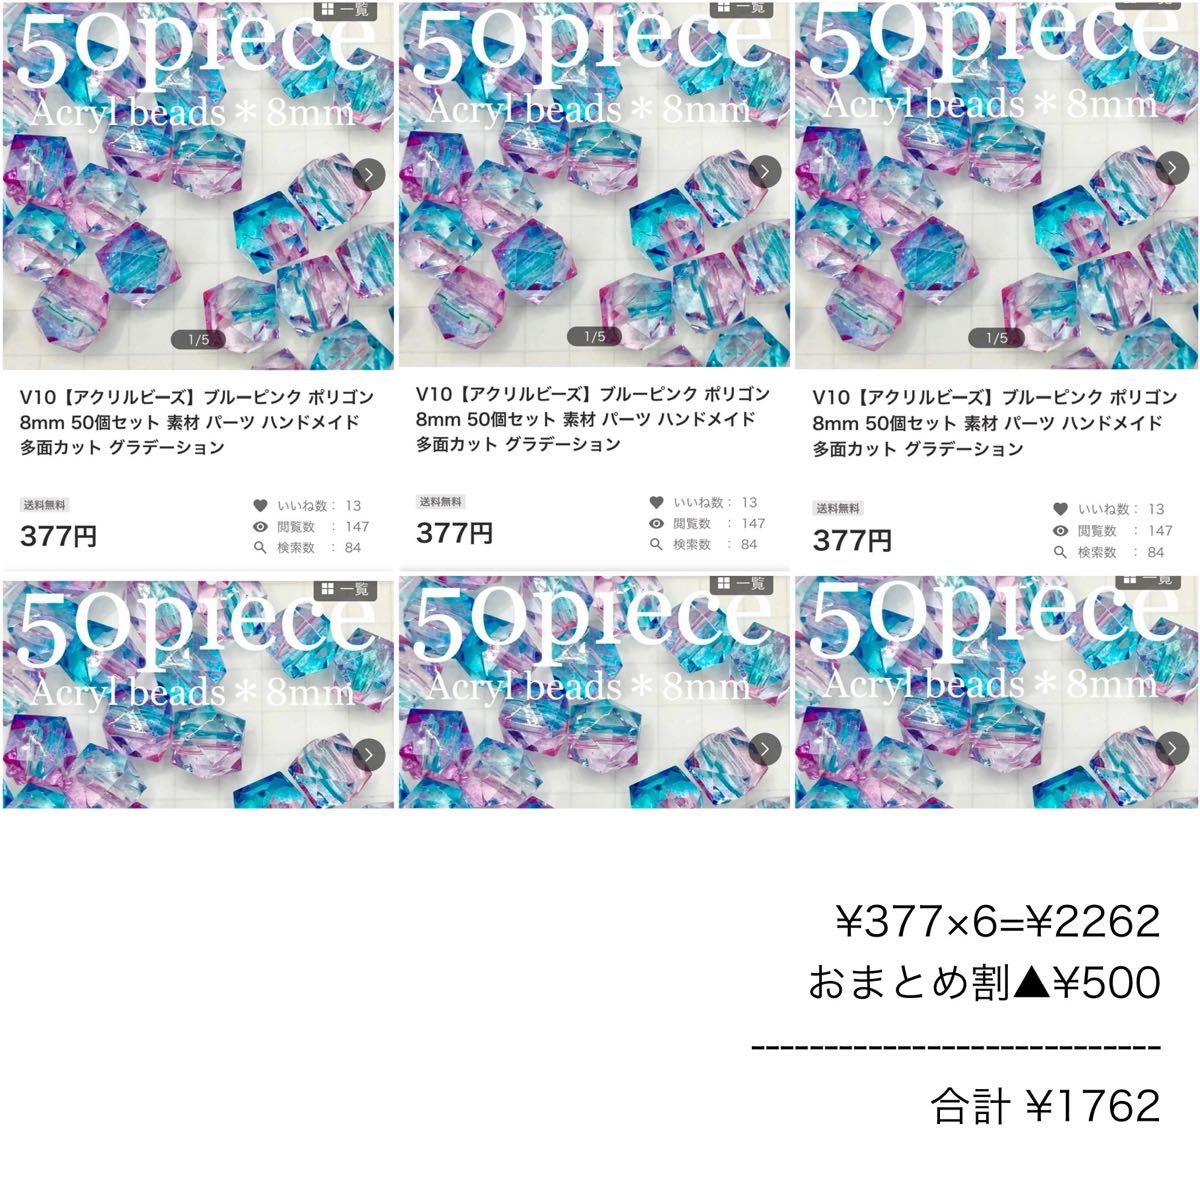 V10【アクリルビーズ】ブルーピンク ポリゴン 8mm 50個セット 素材 パーツ ハンドメイド 多面カット グラデーション